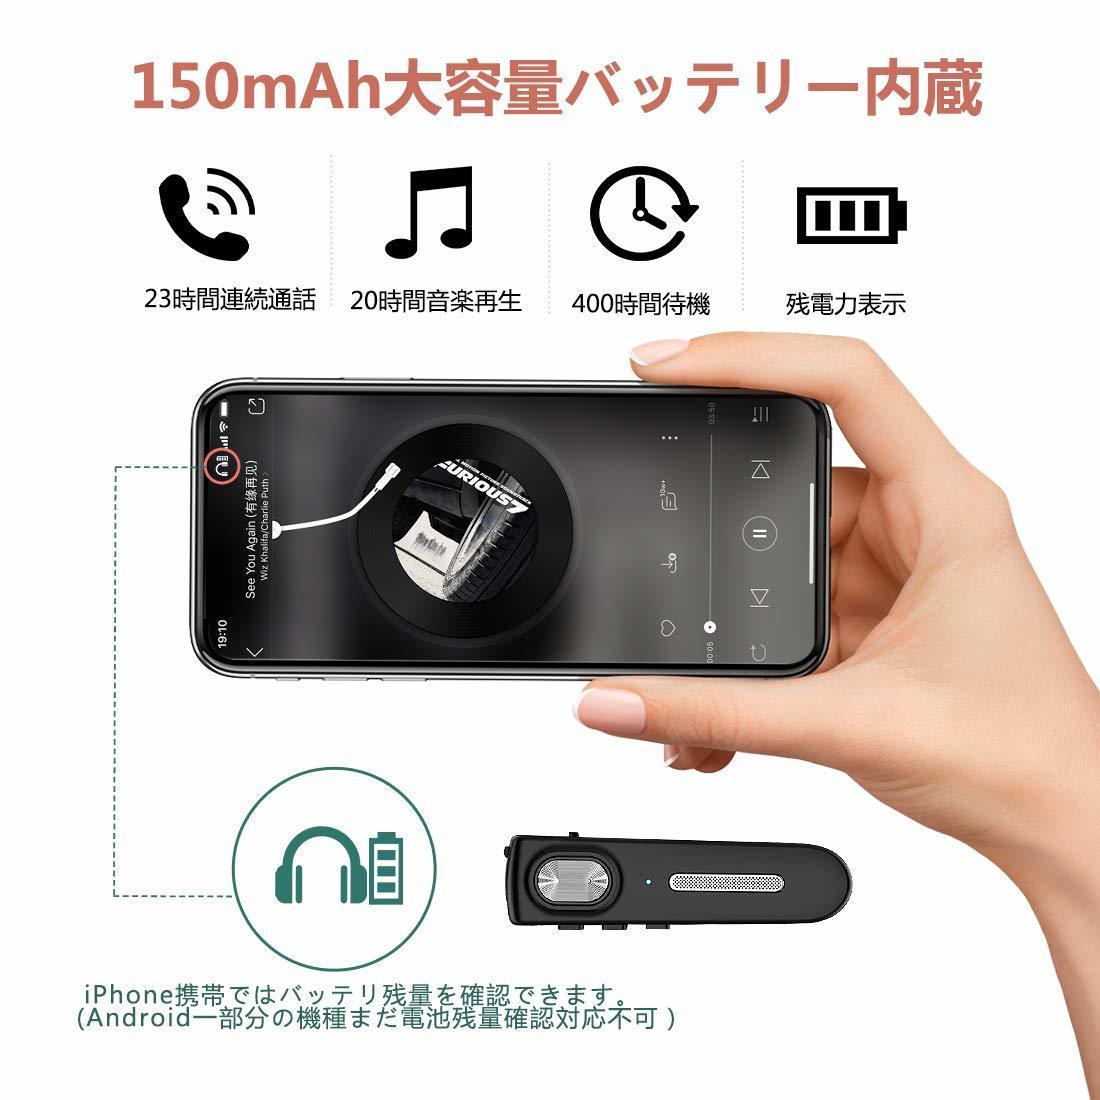 【最安値】Bluetooth ヘッドセット 5.0 日本語音声 ワイヤレス 片耳 マイク内蔵 日本技適マーク取得 150mAhバッテリー 22時間連続再生 _画像4